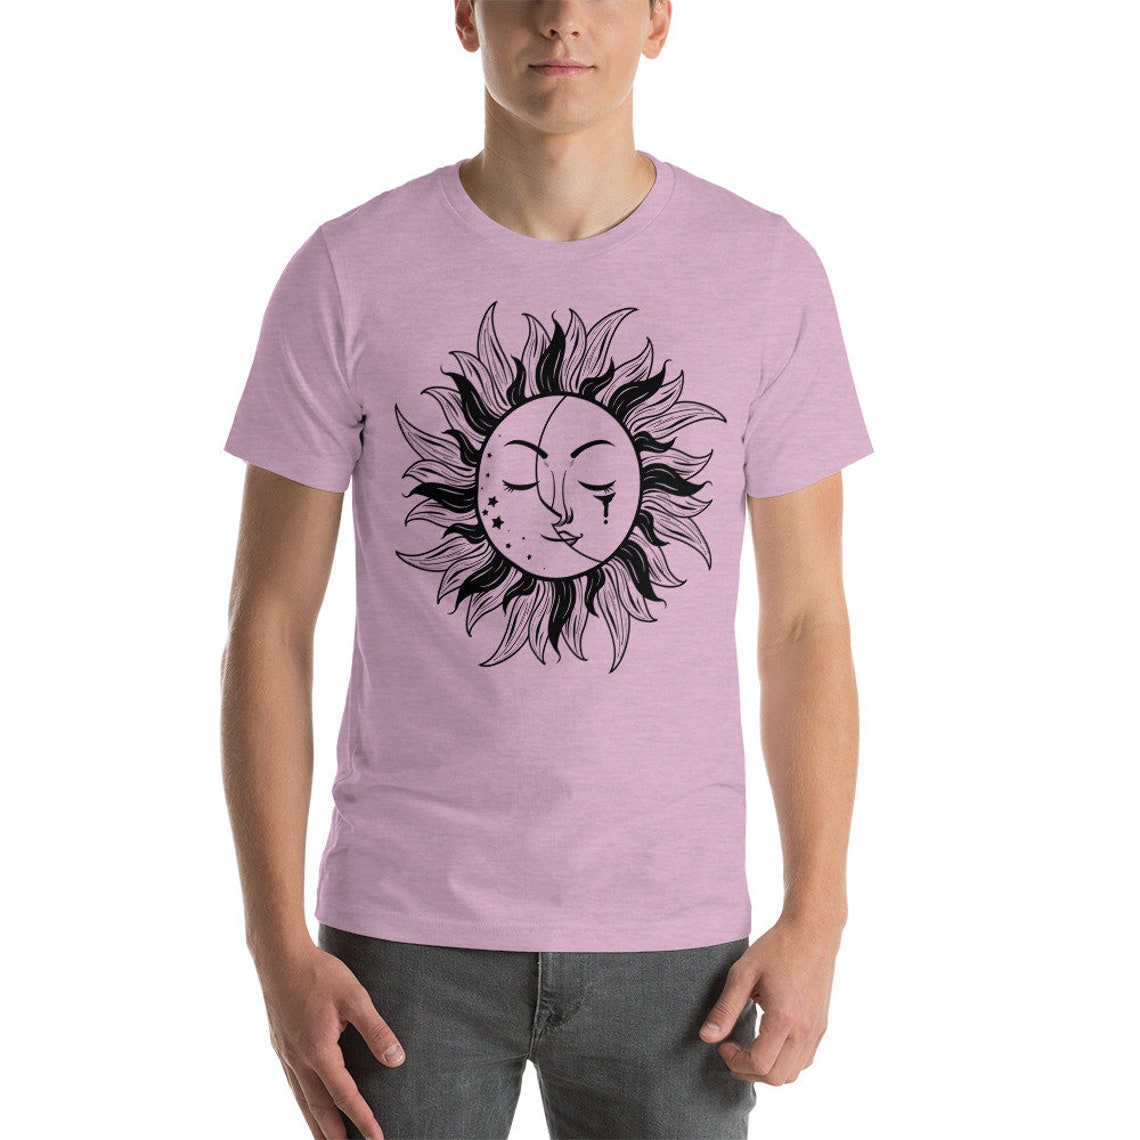 Vintage Sun & Moon Unisex Shirt Sun and Moon Stars Sun | Etsy